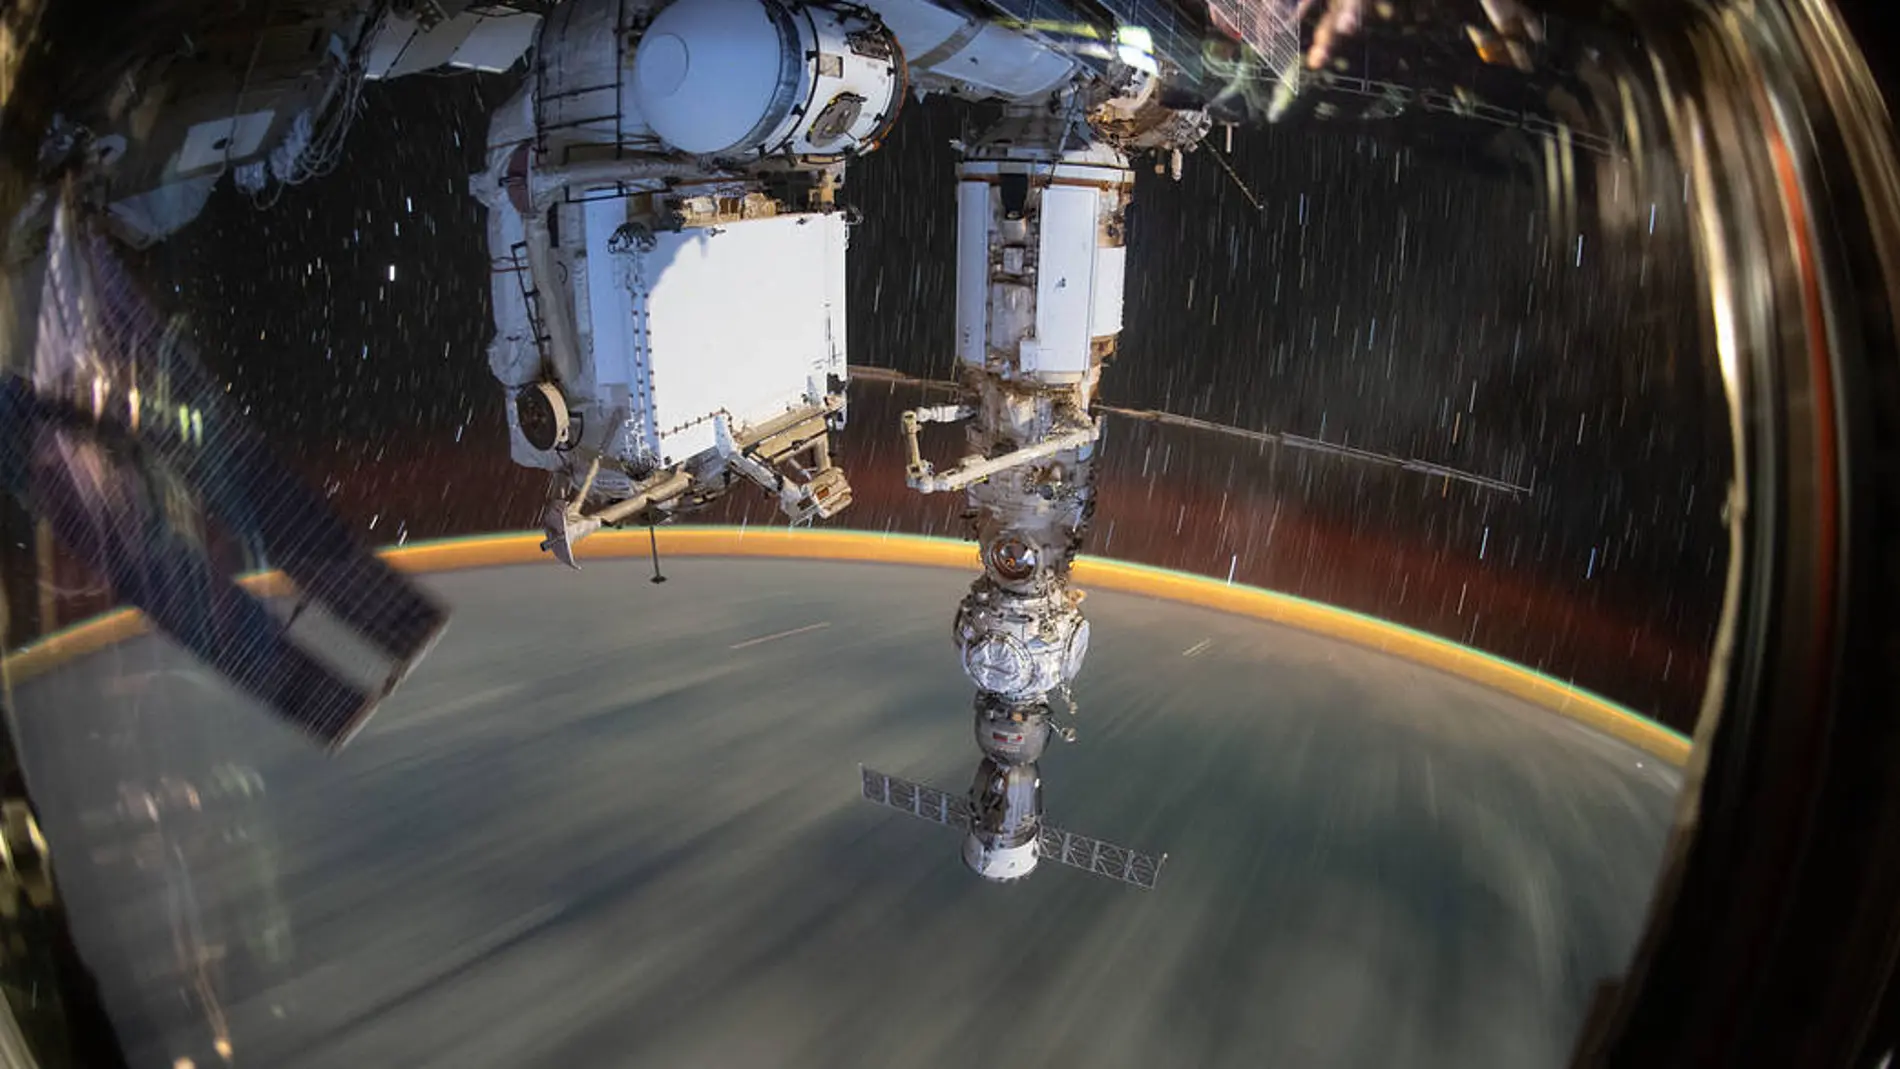 Fotografía de larga exposición tomada desde la Estación Espacial Internacional a una altura de 416 km sobre el nivel del mar.